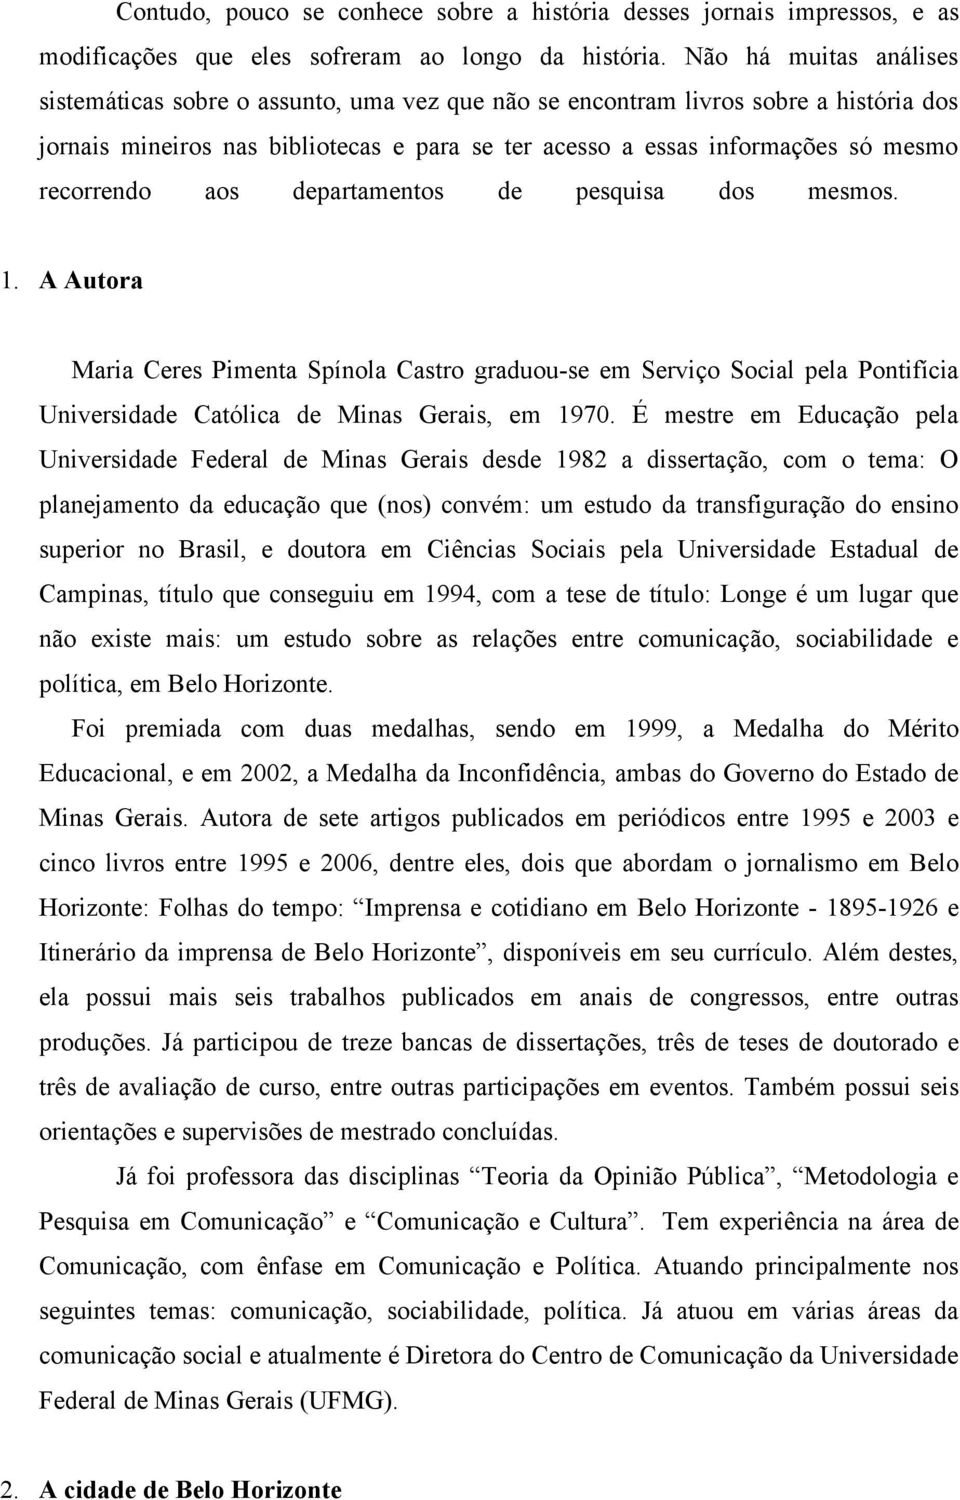 recorrendo aos departamentos de pesquisa dos mesmos. 1. A Autora Maria Ceres Pimenta Spínola Castro graduou-se em Serviço Social pela Pontifícia Universidade Católica de Minas Gerais, em 1970.